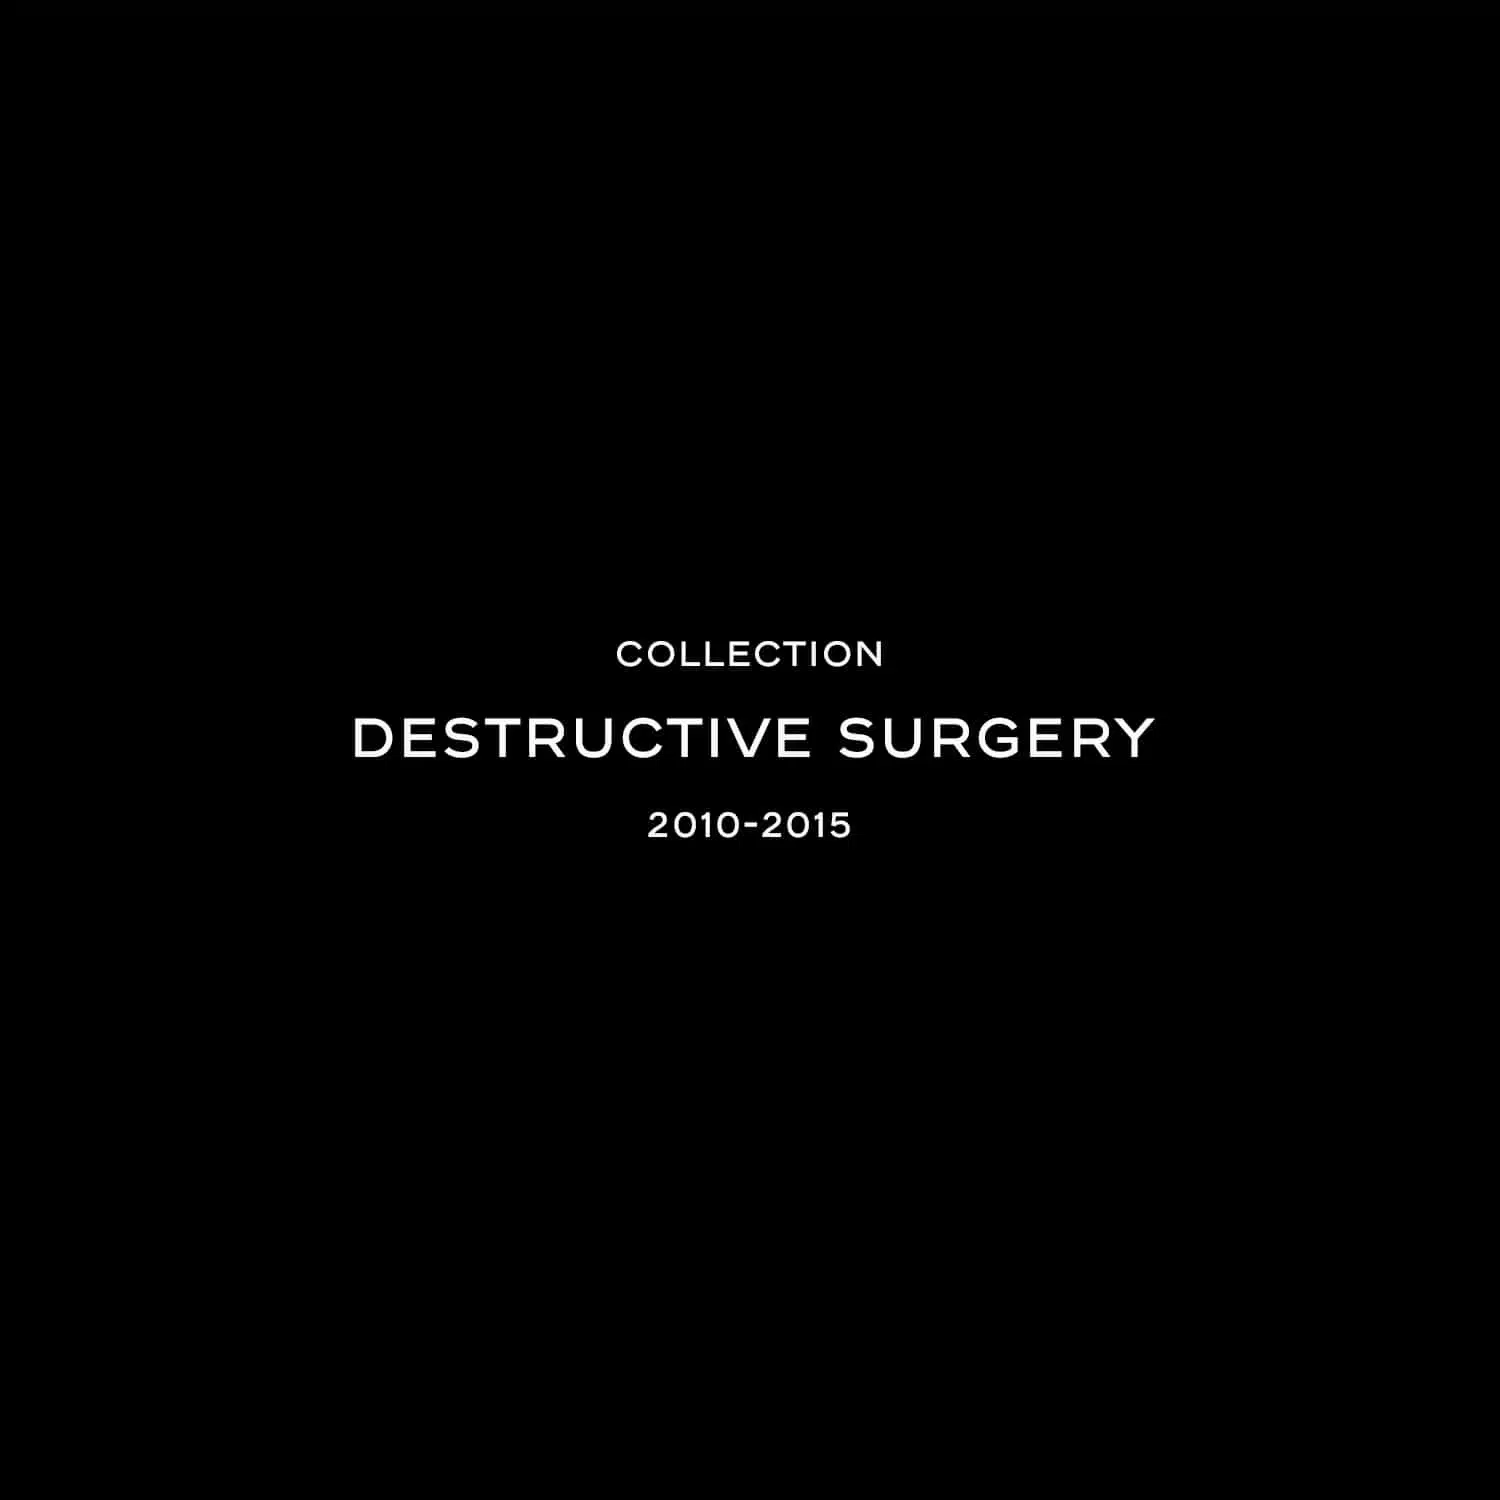 Destructive surgery